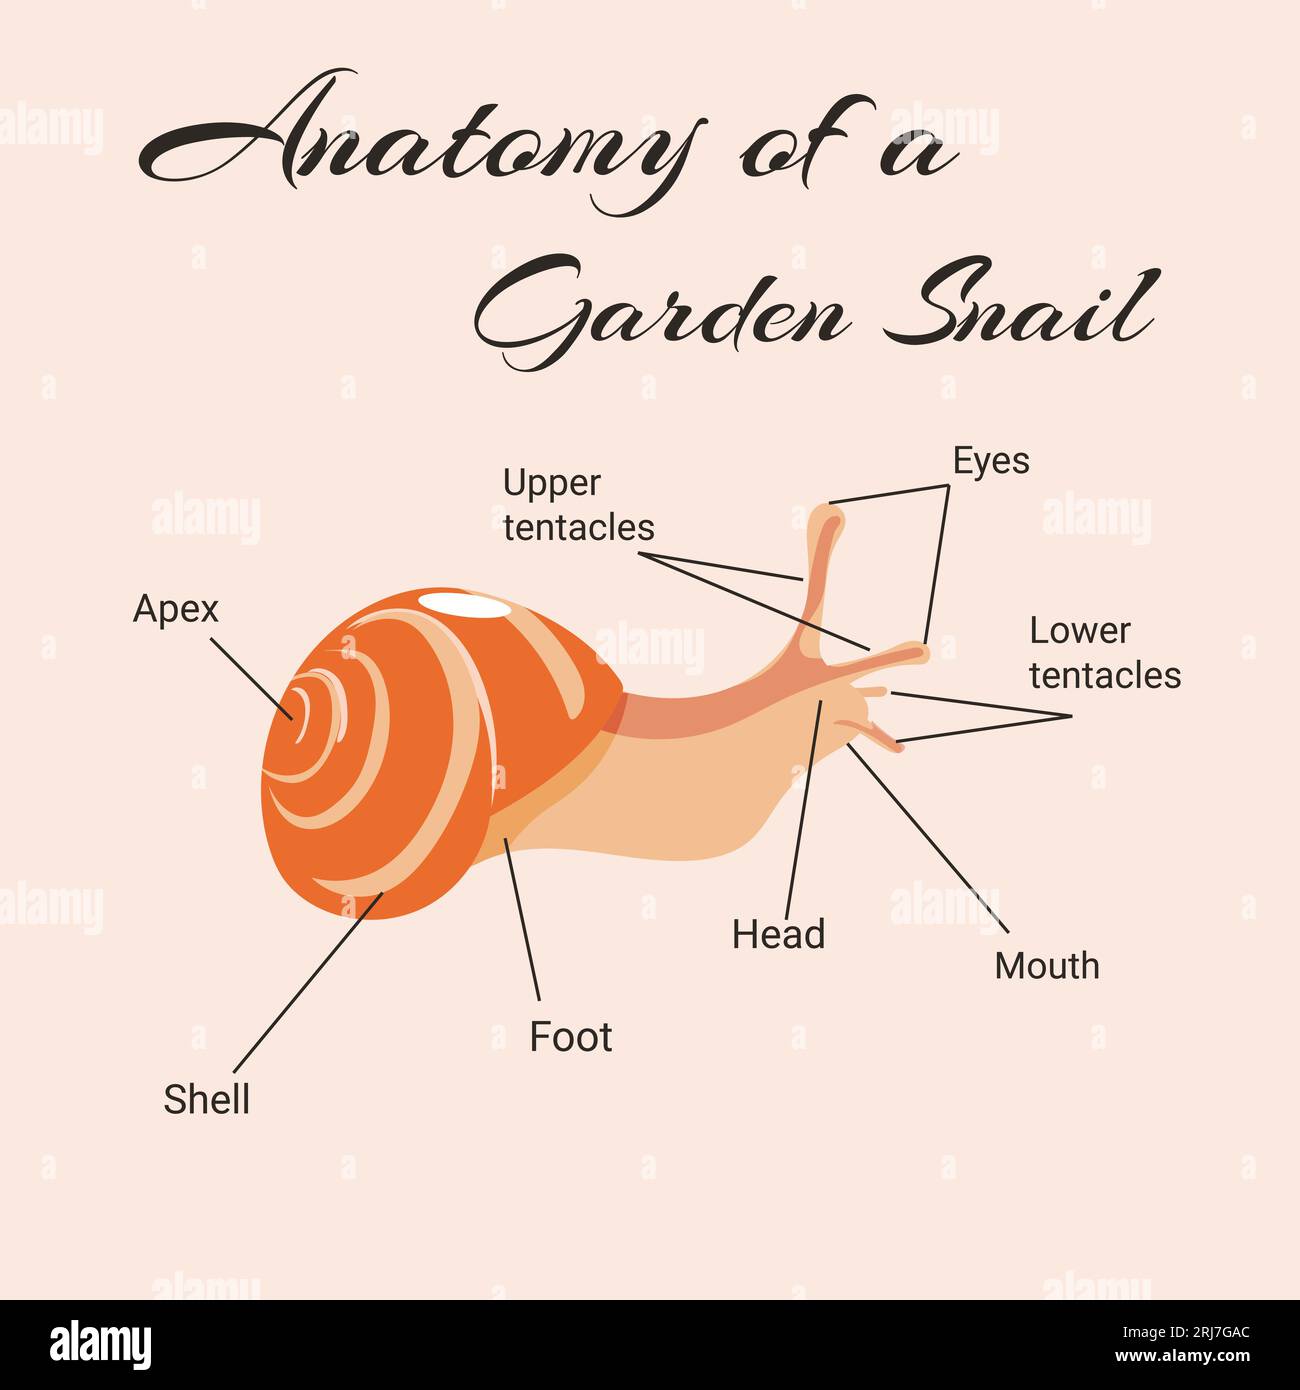 Anatomia di un manuale vettoriale di lumaca da giardino. Illustrazione Vettoriale